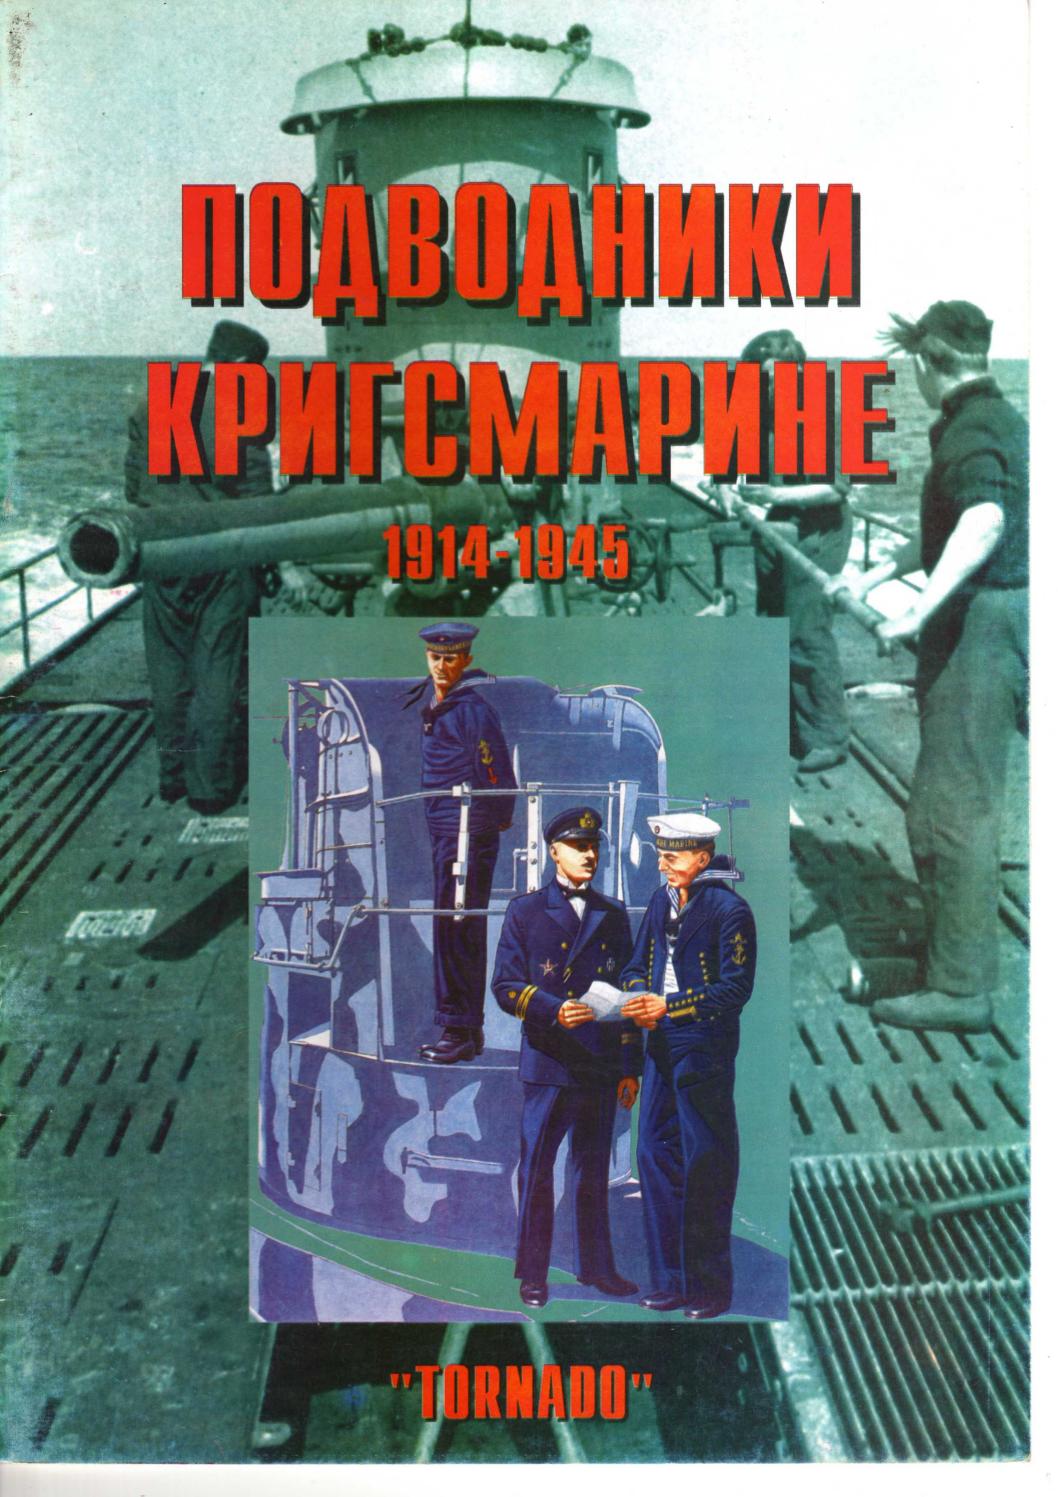 Tornado Проводники Кригсмарине 1914-1945